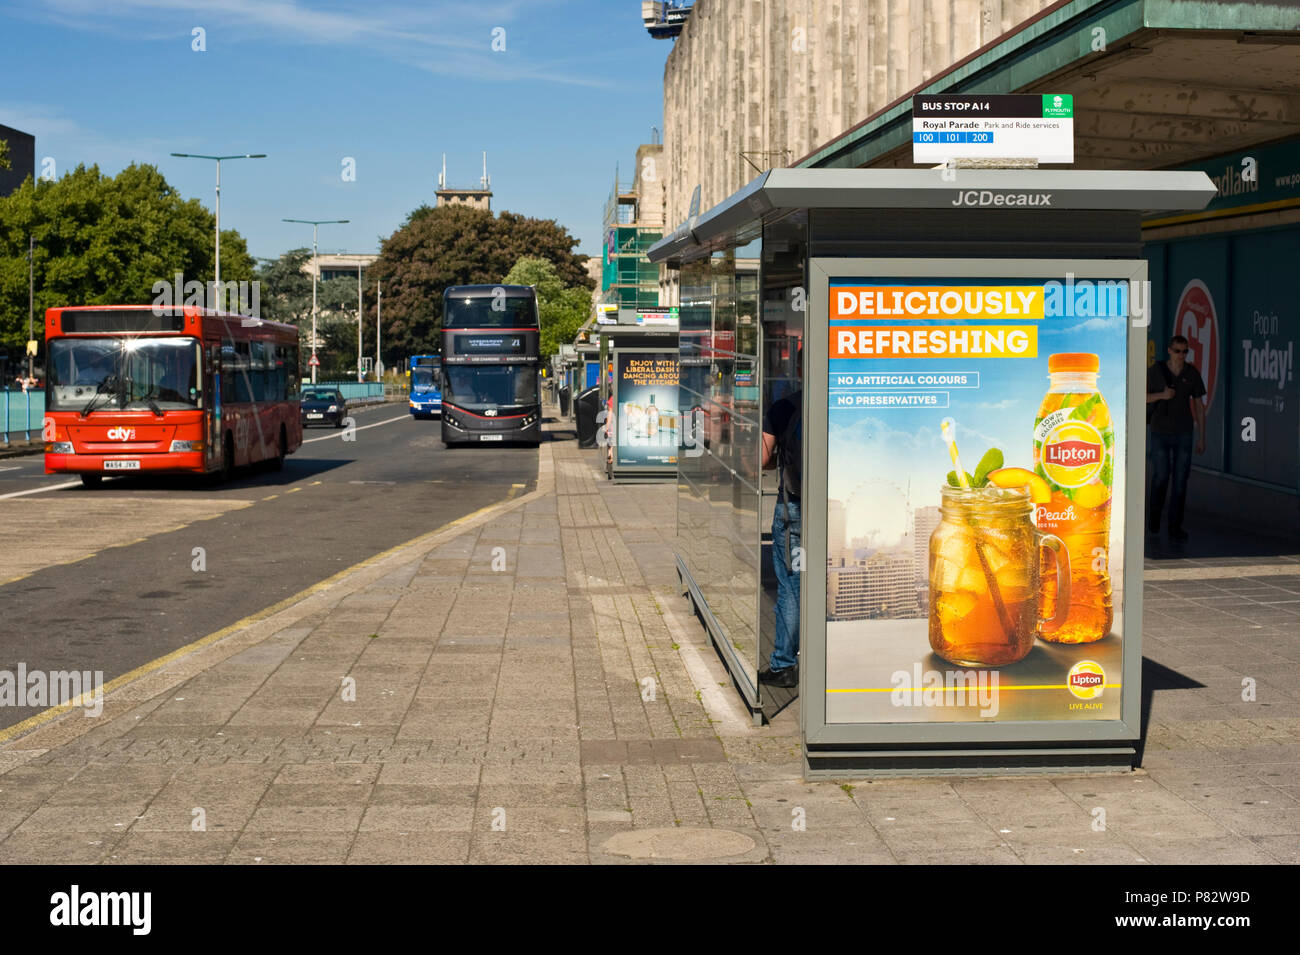 Arrêt de bus route JCDecaux billboard site web publicité Lipton thé glacé en plymouth Devon England UK Banque D'Images